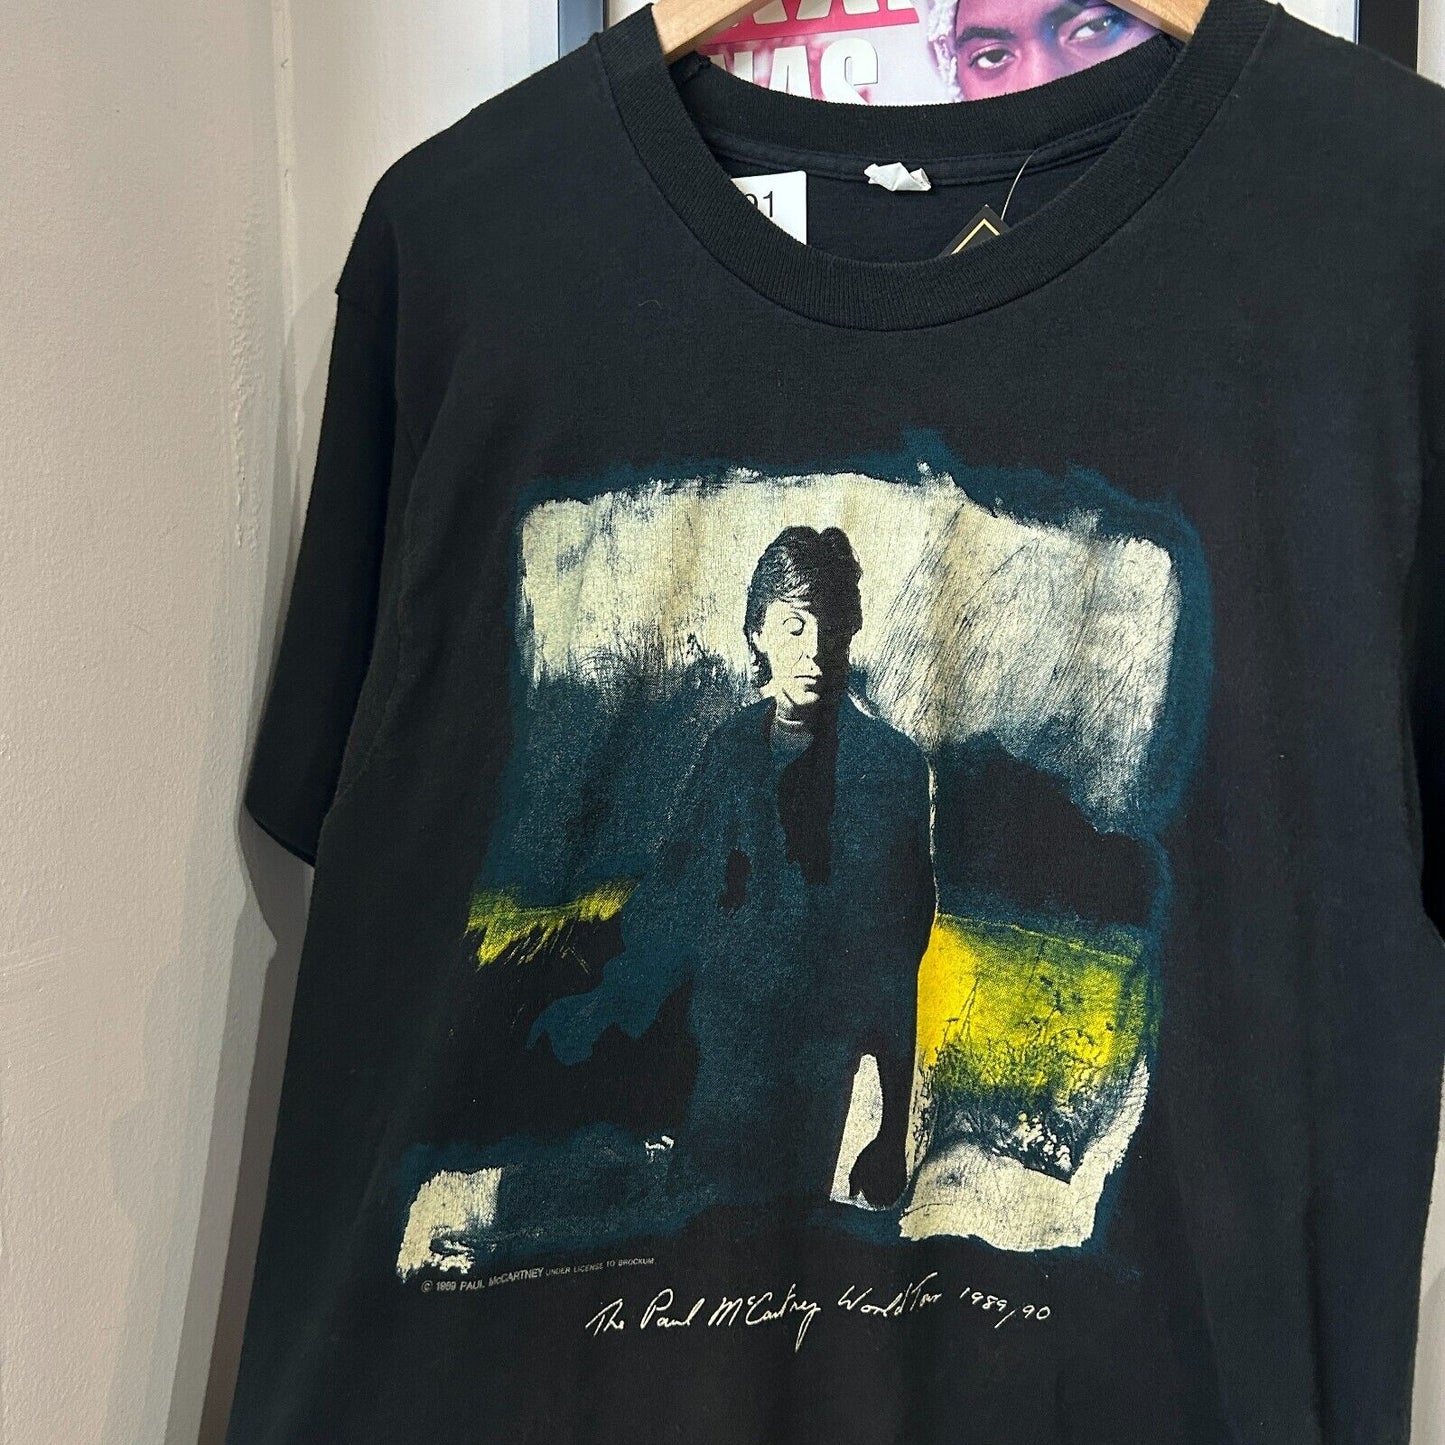 VINTAGE 1989 | Paul McCartney World Tour Black Band T-Shirt sz L Adult